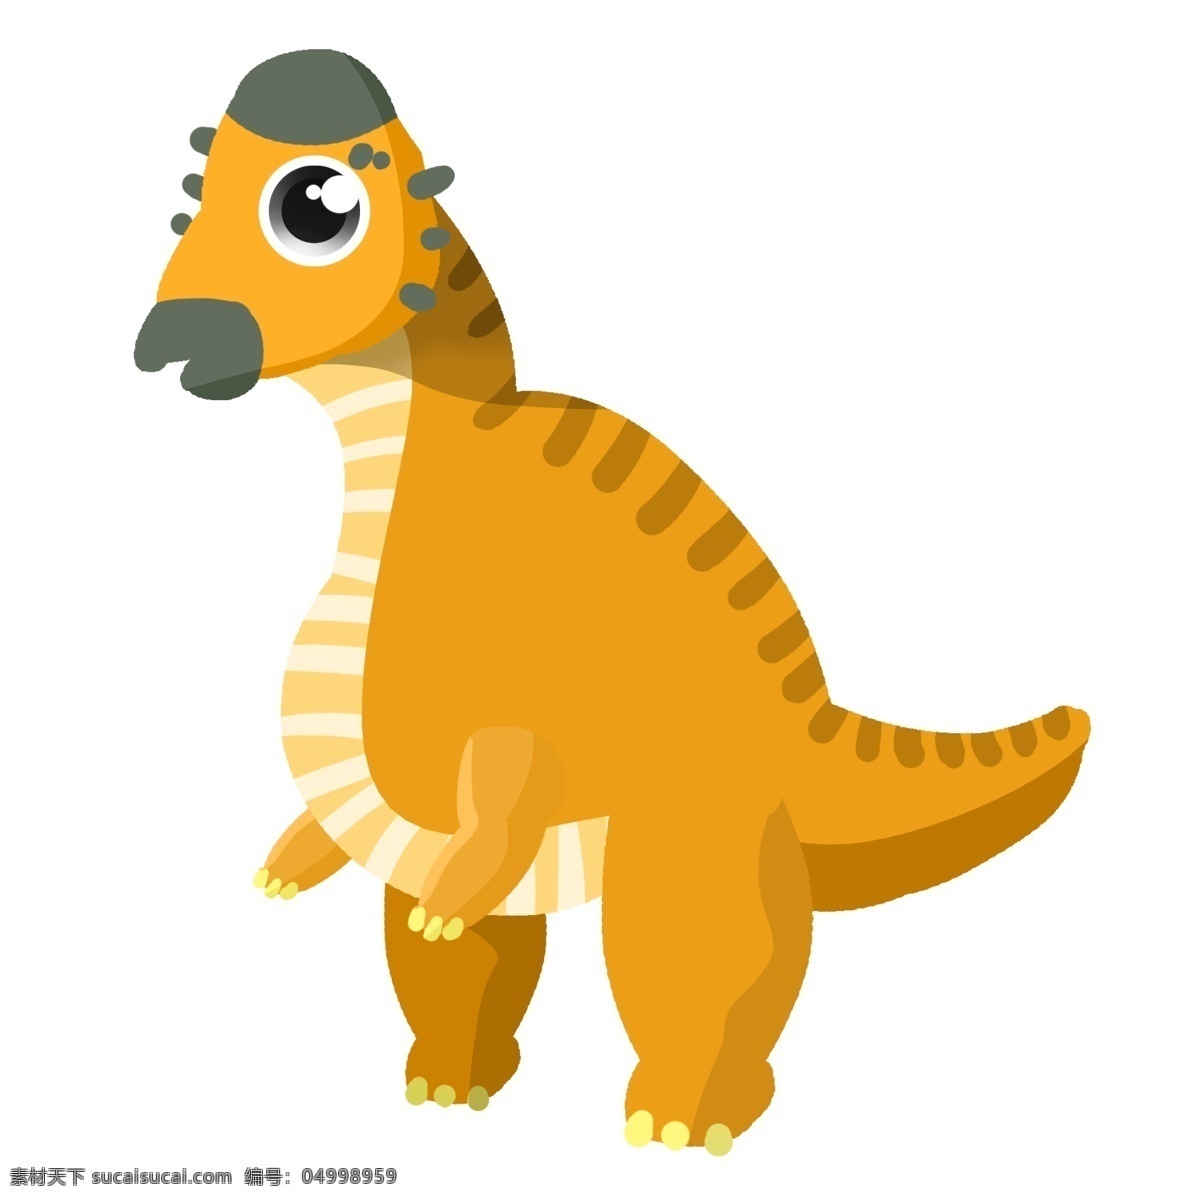 黄色 可爱 恐龙 插画 高大的恐龙 可爱恐龙 恐龙插画 儿童玩具恐龙 可爱插画